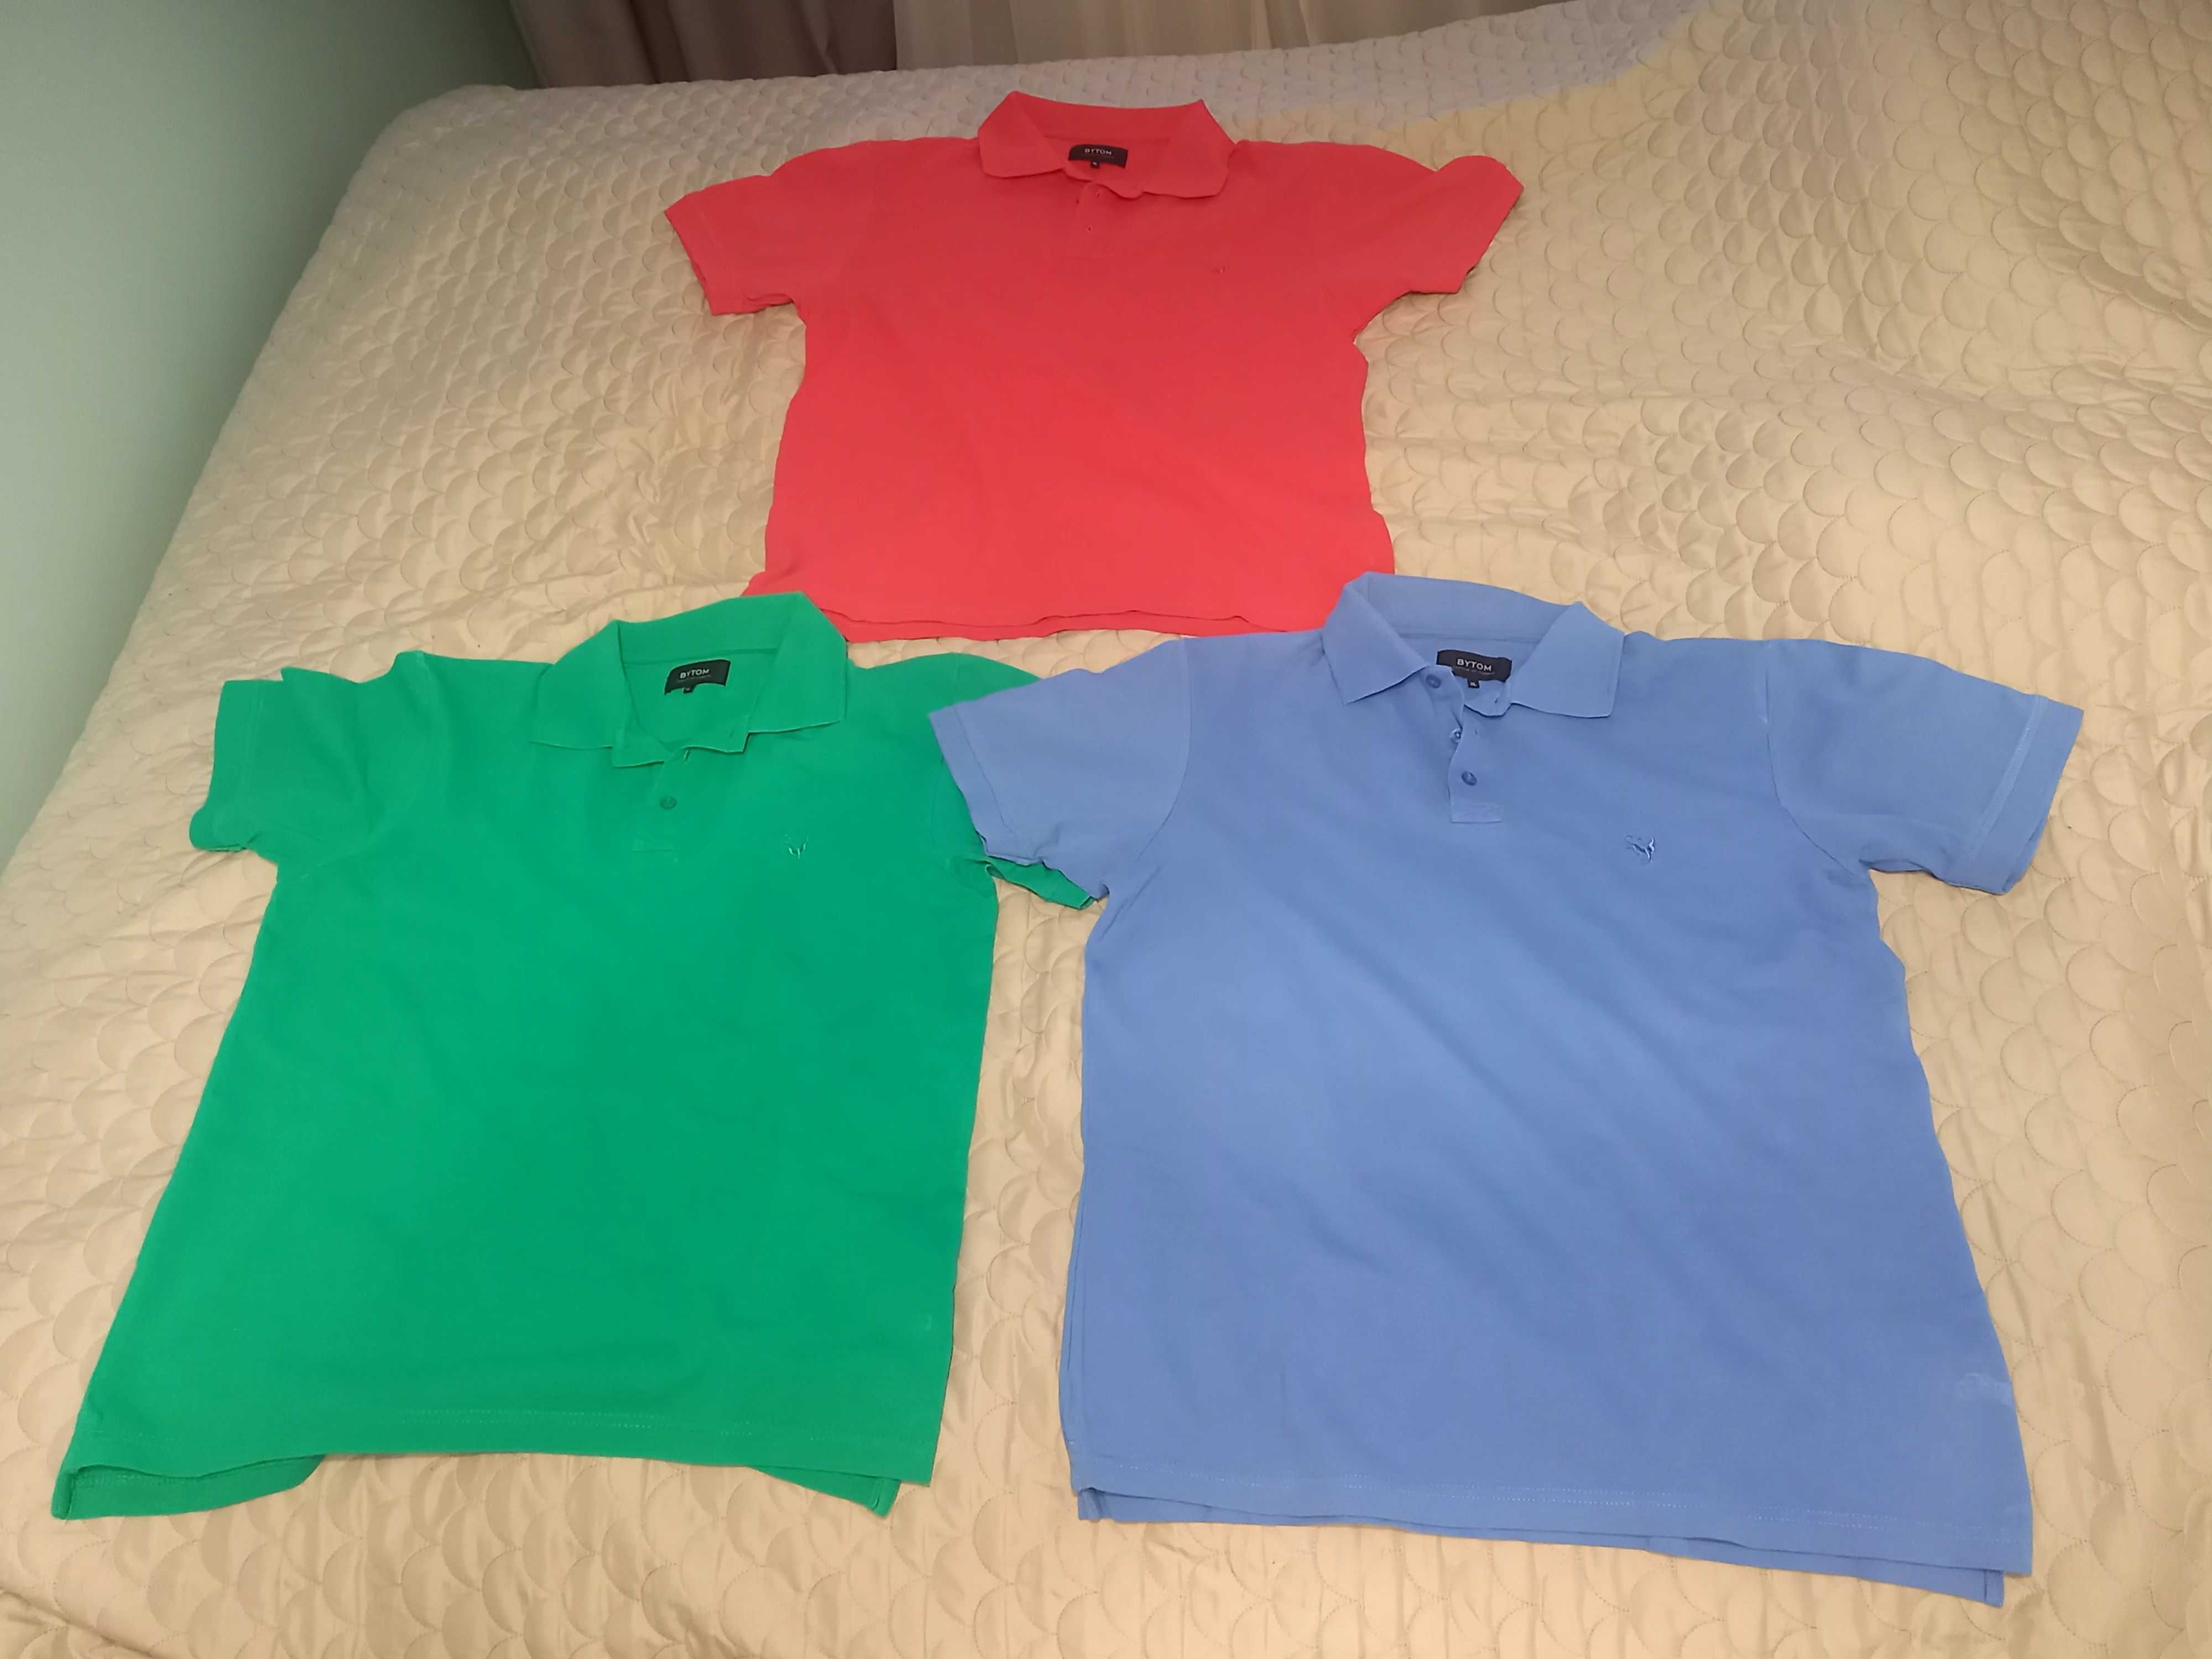 Koszulka męska Polo marki Bytom 3 szt. w różnych kolorach